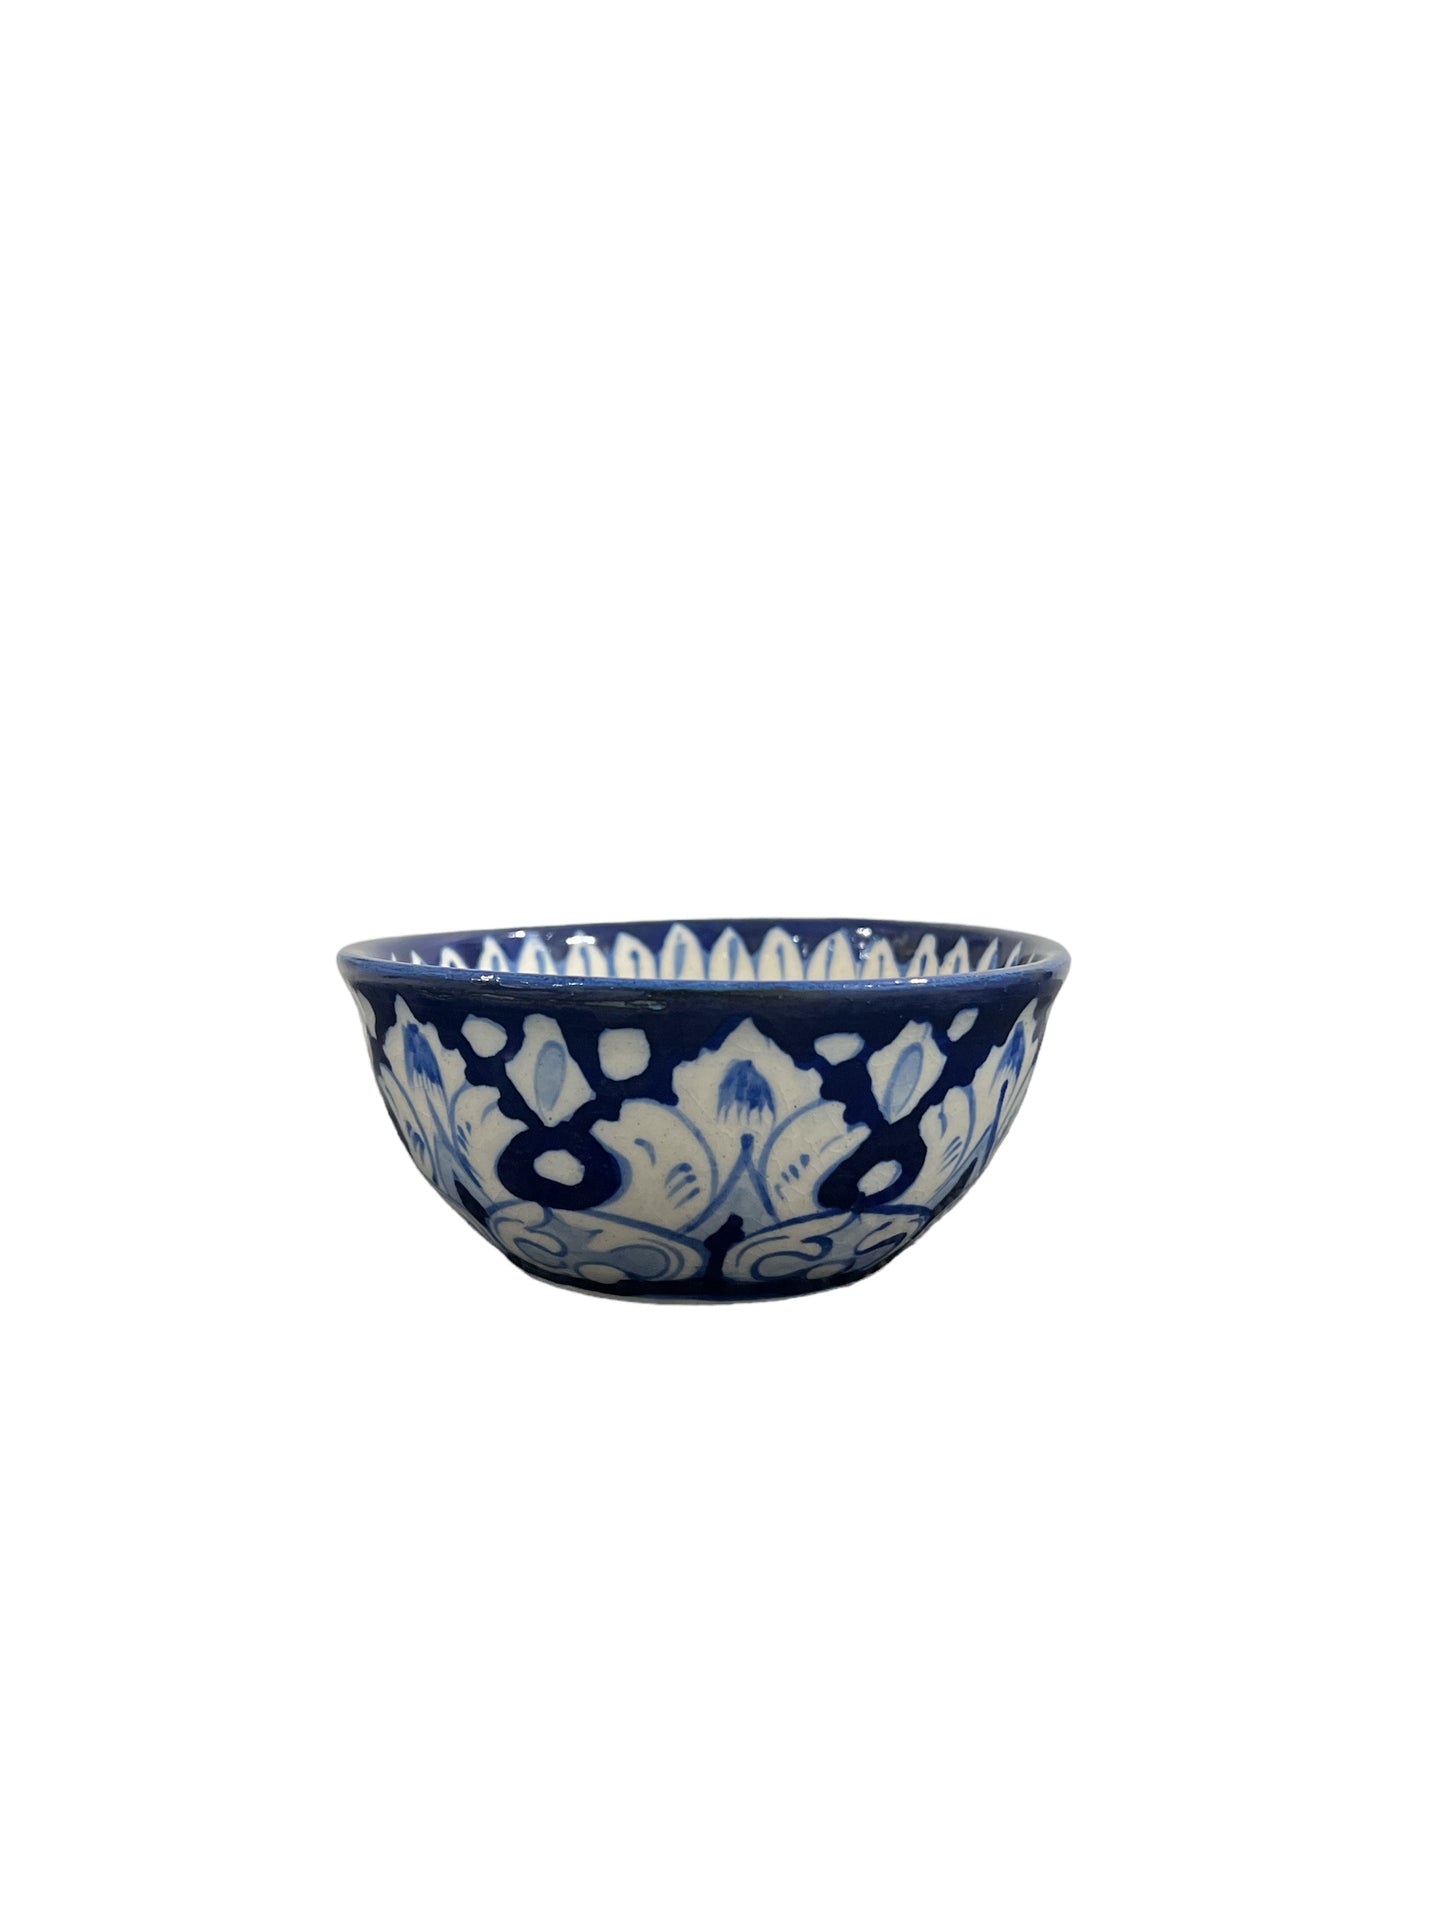 Blue Pottery Serving Bowl - White Floral Design (Set of 2)